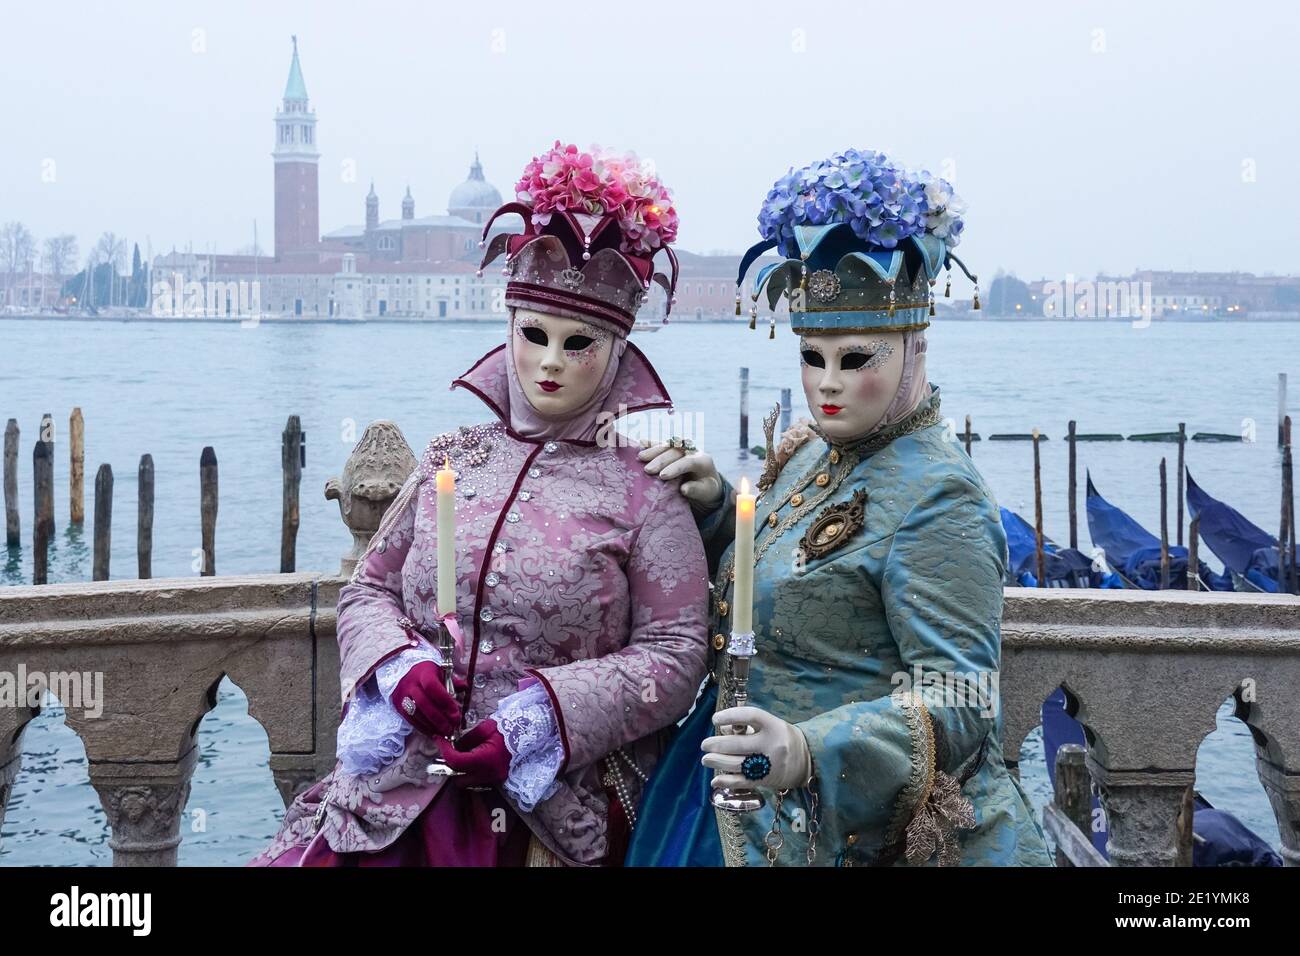 Frau in traditionell dekoriertem Kostüm und Maske während des Karnevals in Venedig gekleidet mit dem Kloster San Giorgio im Hintergrund Venedig, Italien Stockfoto